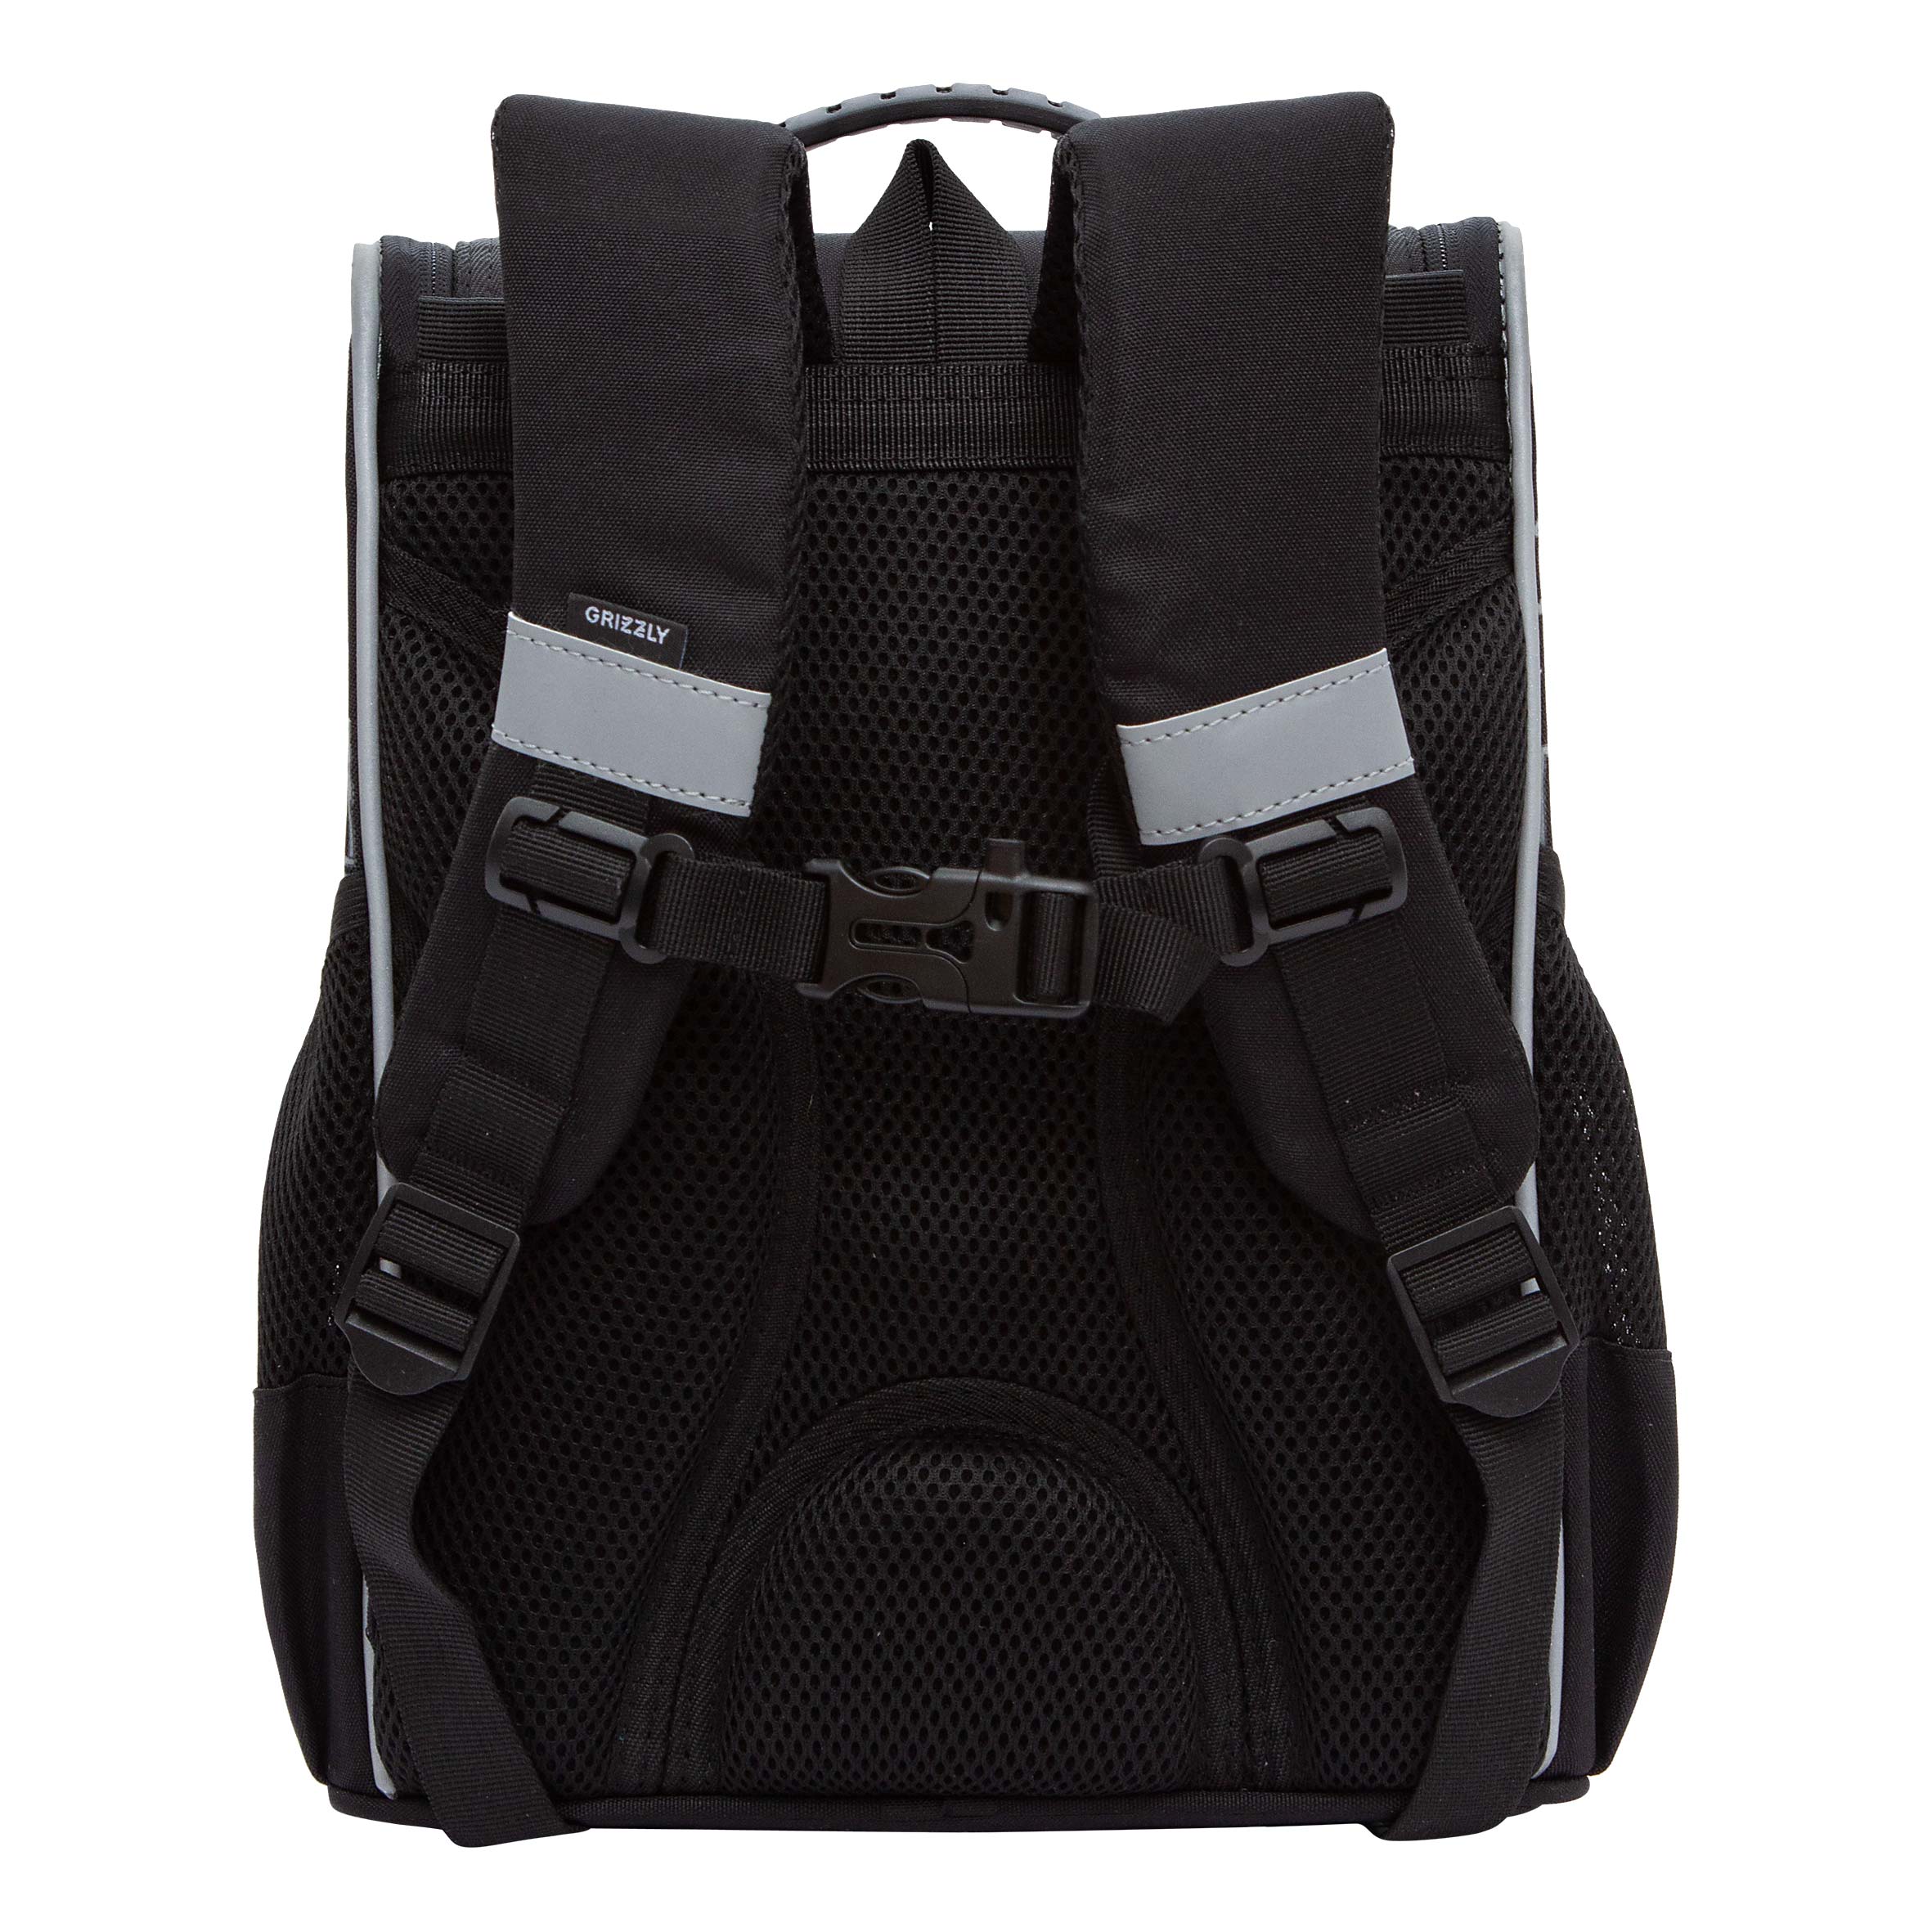 RAm-485-1 Рюкзак школьный с мешком